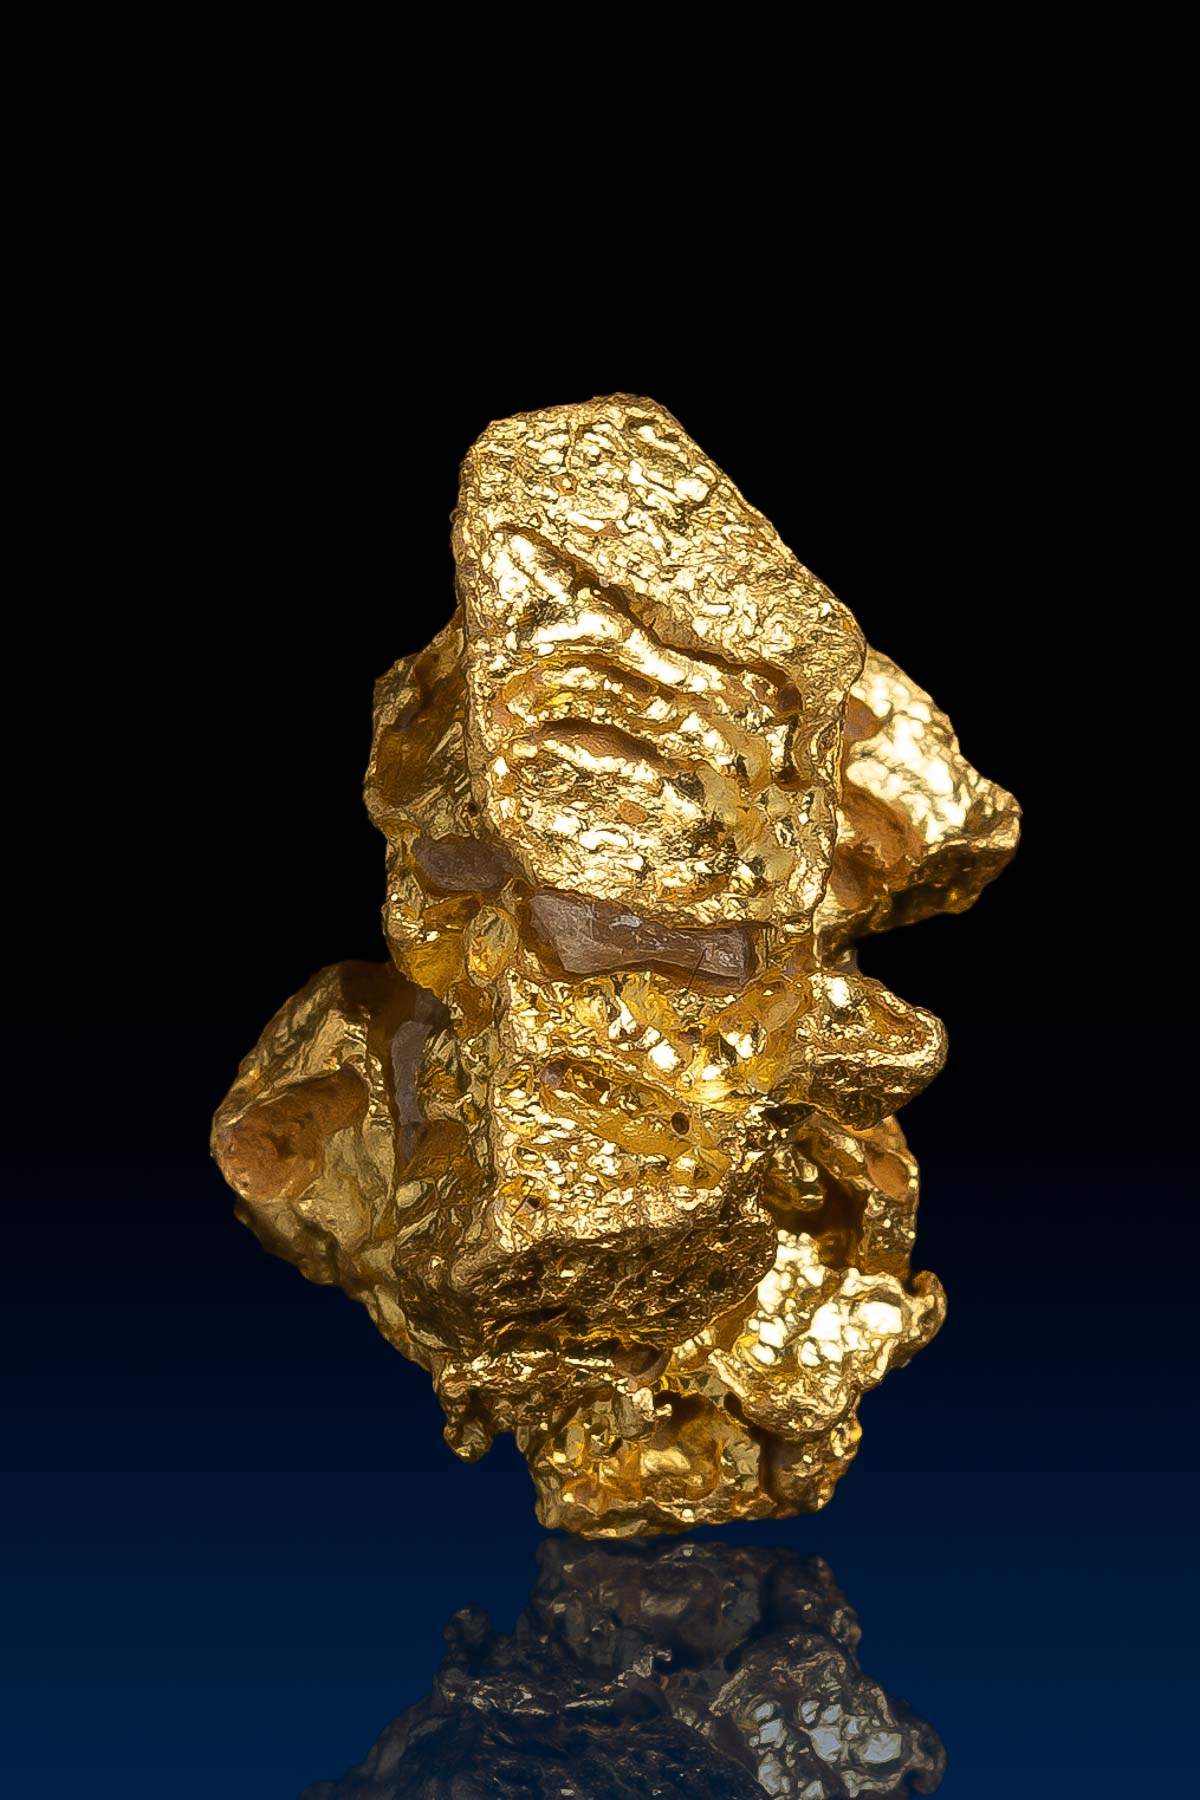 Sharp and Wel Gold Crystal Nugget - Alta Floresta, BR